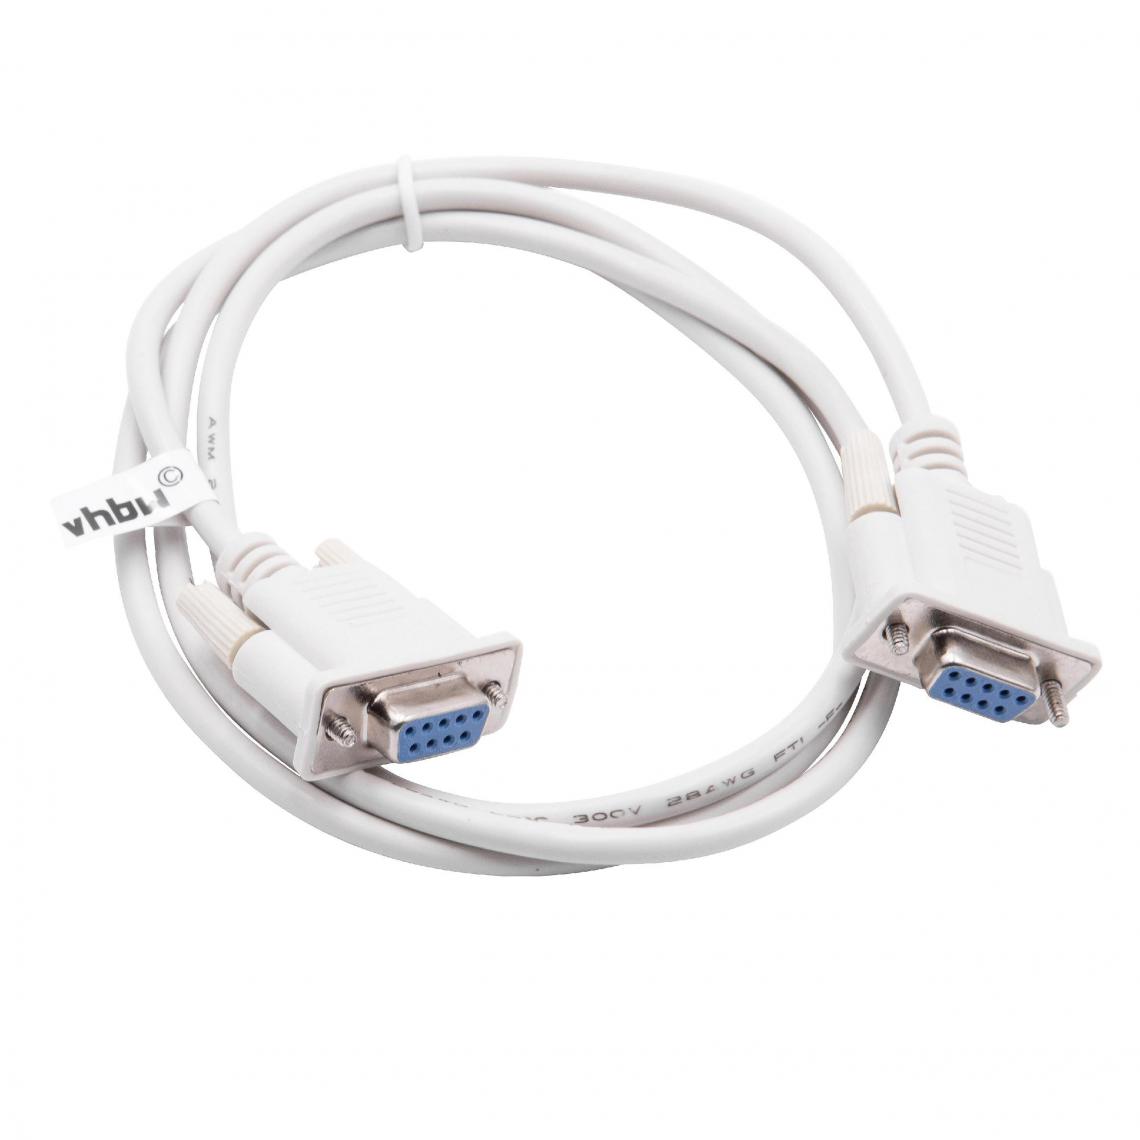 Vhbw - vhbw Câble de l'adaptateur série RS-232, Câble null modem pour les PCs et périphérique 130cm gris - Accessoires alimentation